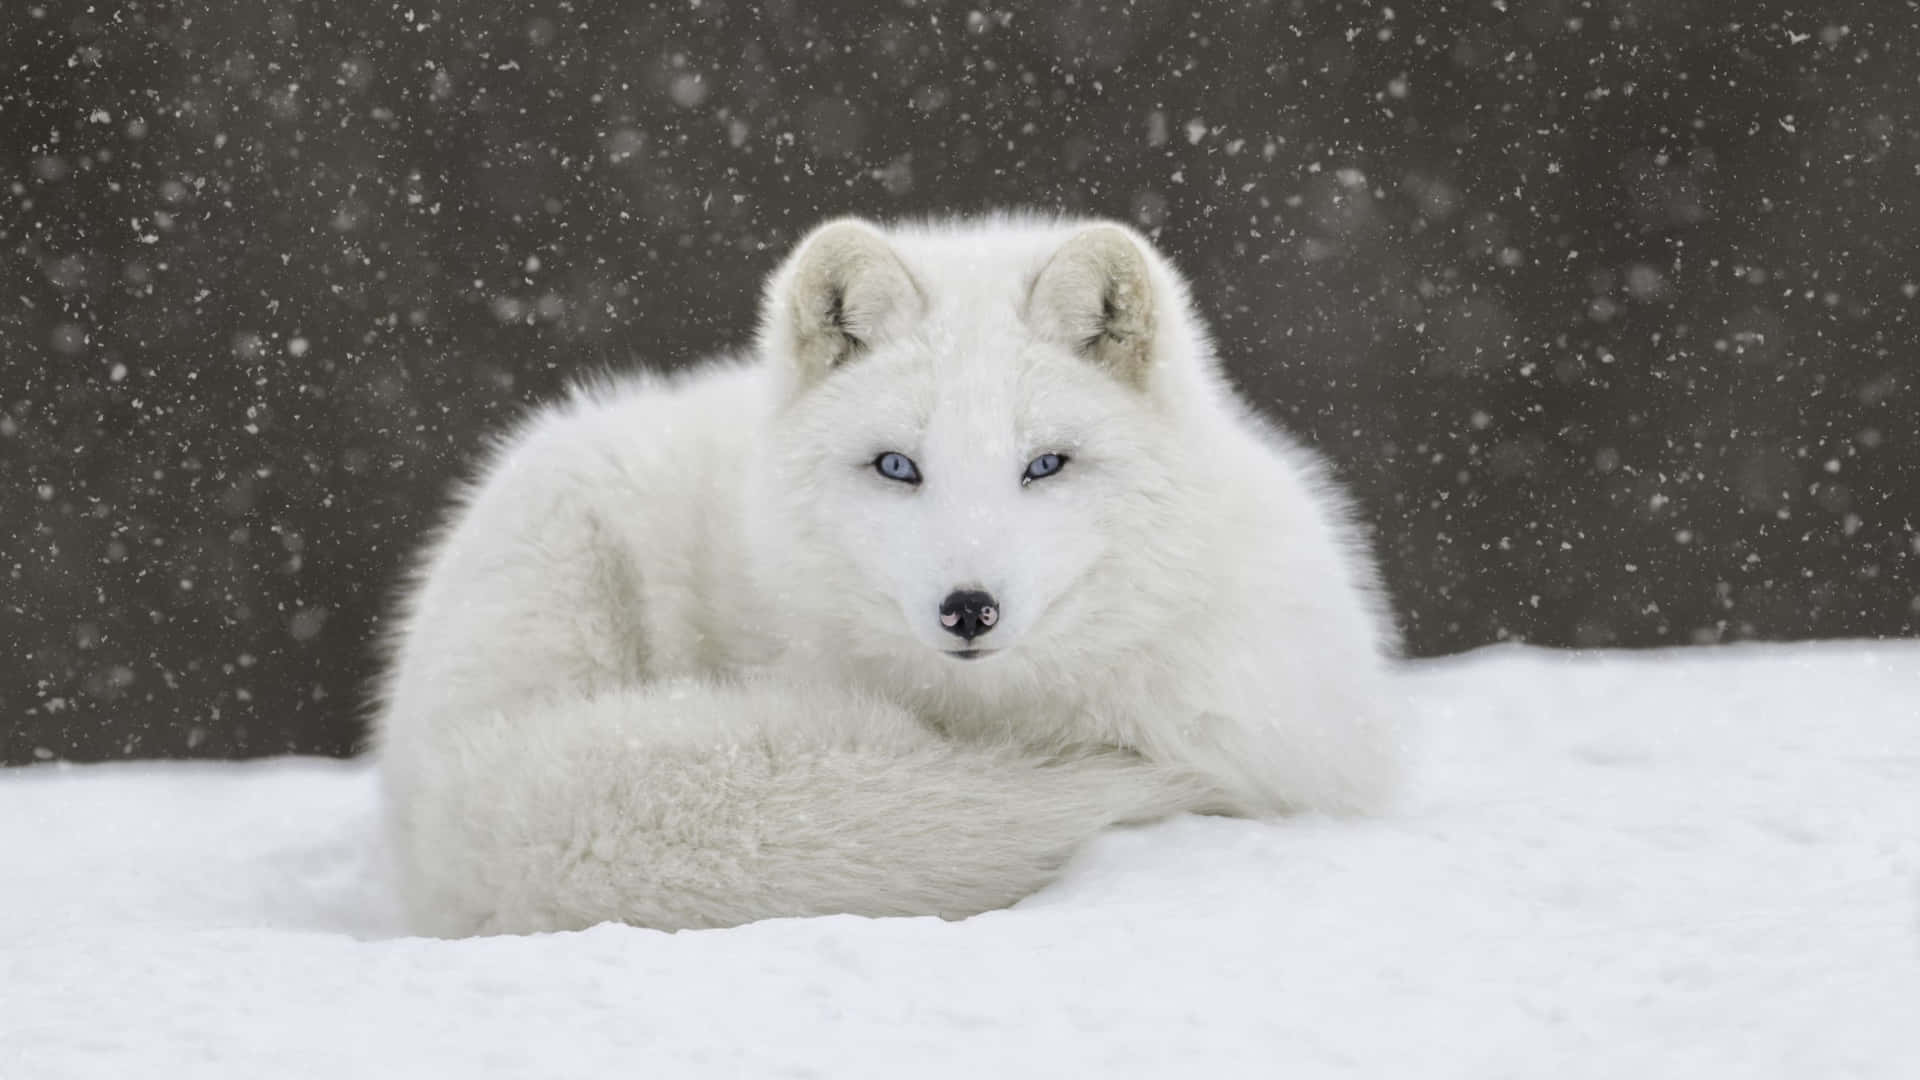 A majestic Arctic Fox in its natural habitat